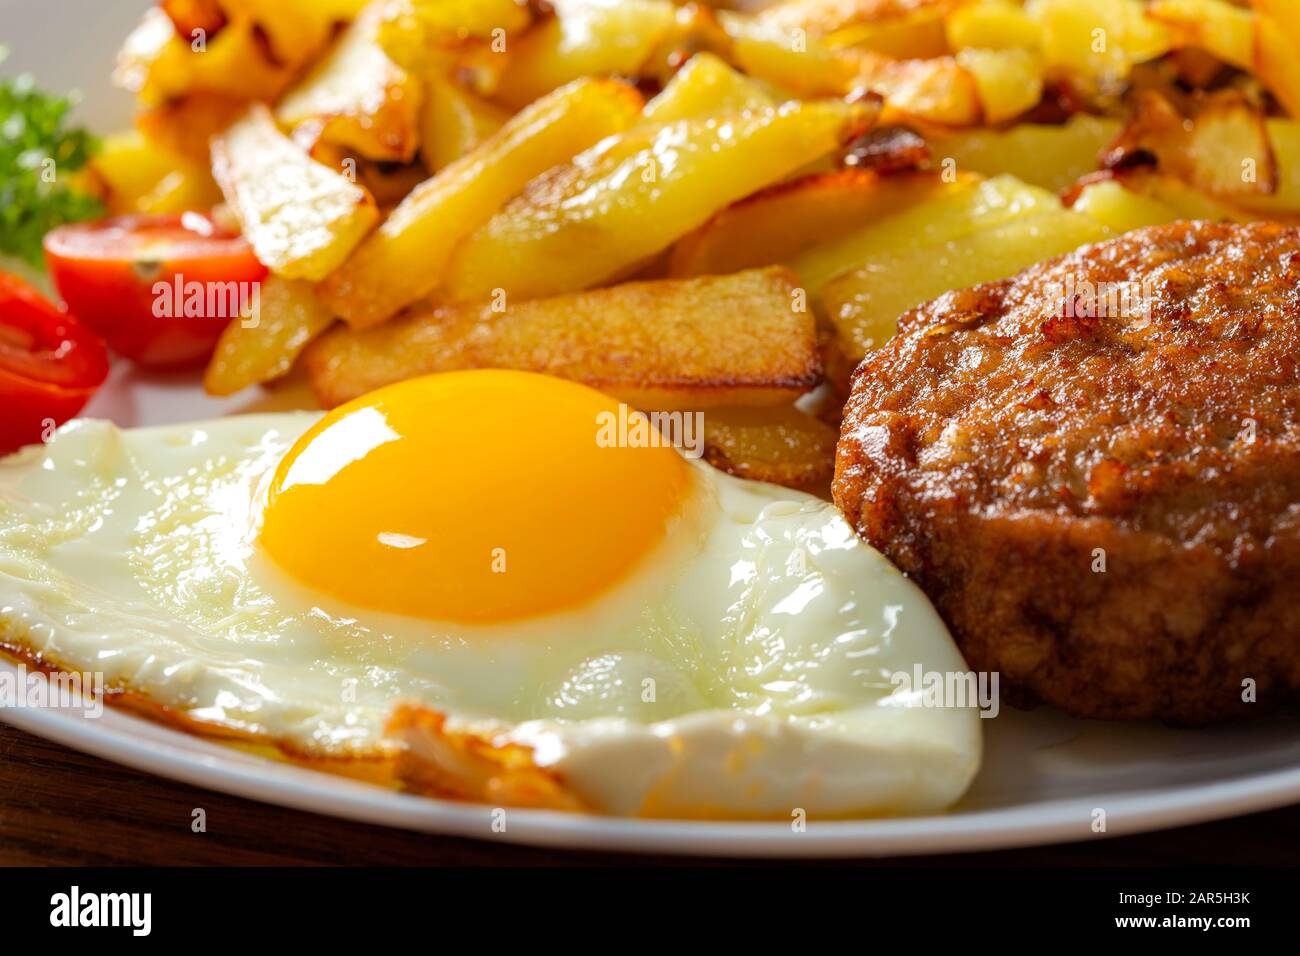 Pommes mit frittiertem Ei und einem großen Fleischball auf dem Teller - Nahansicht Stockfoto